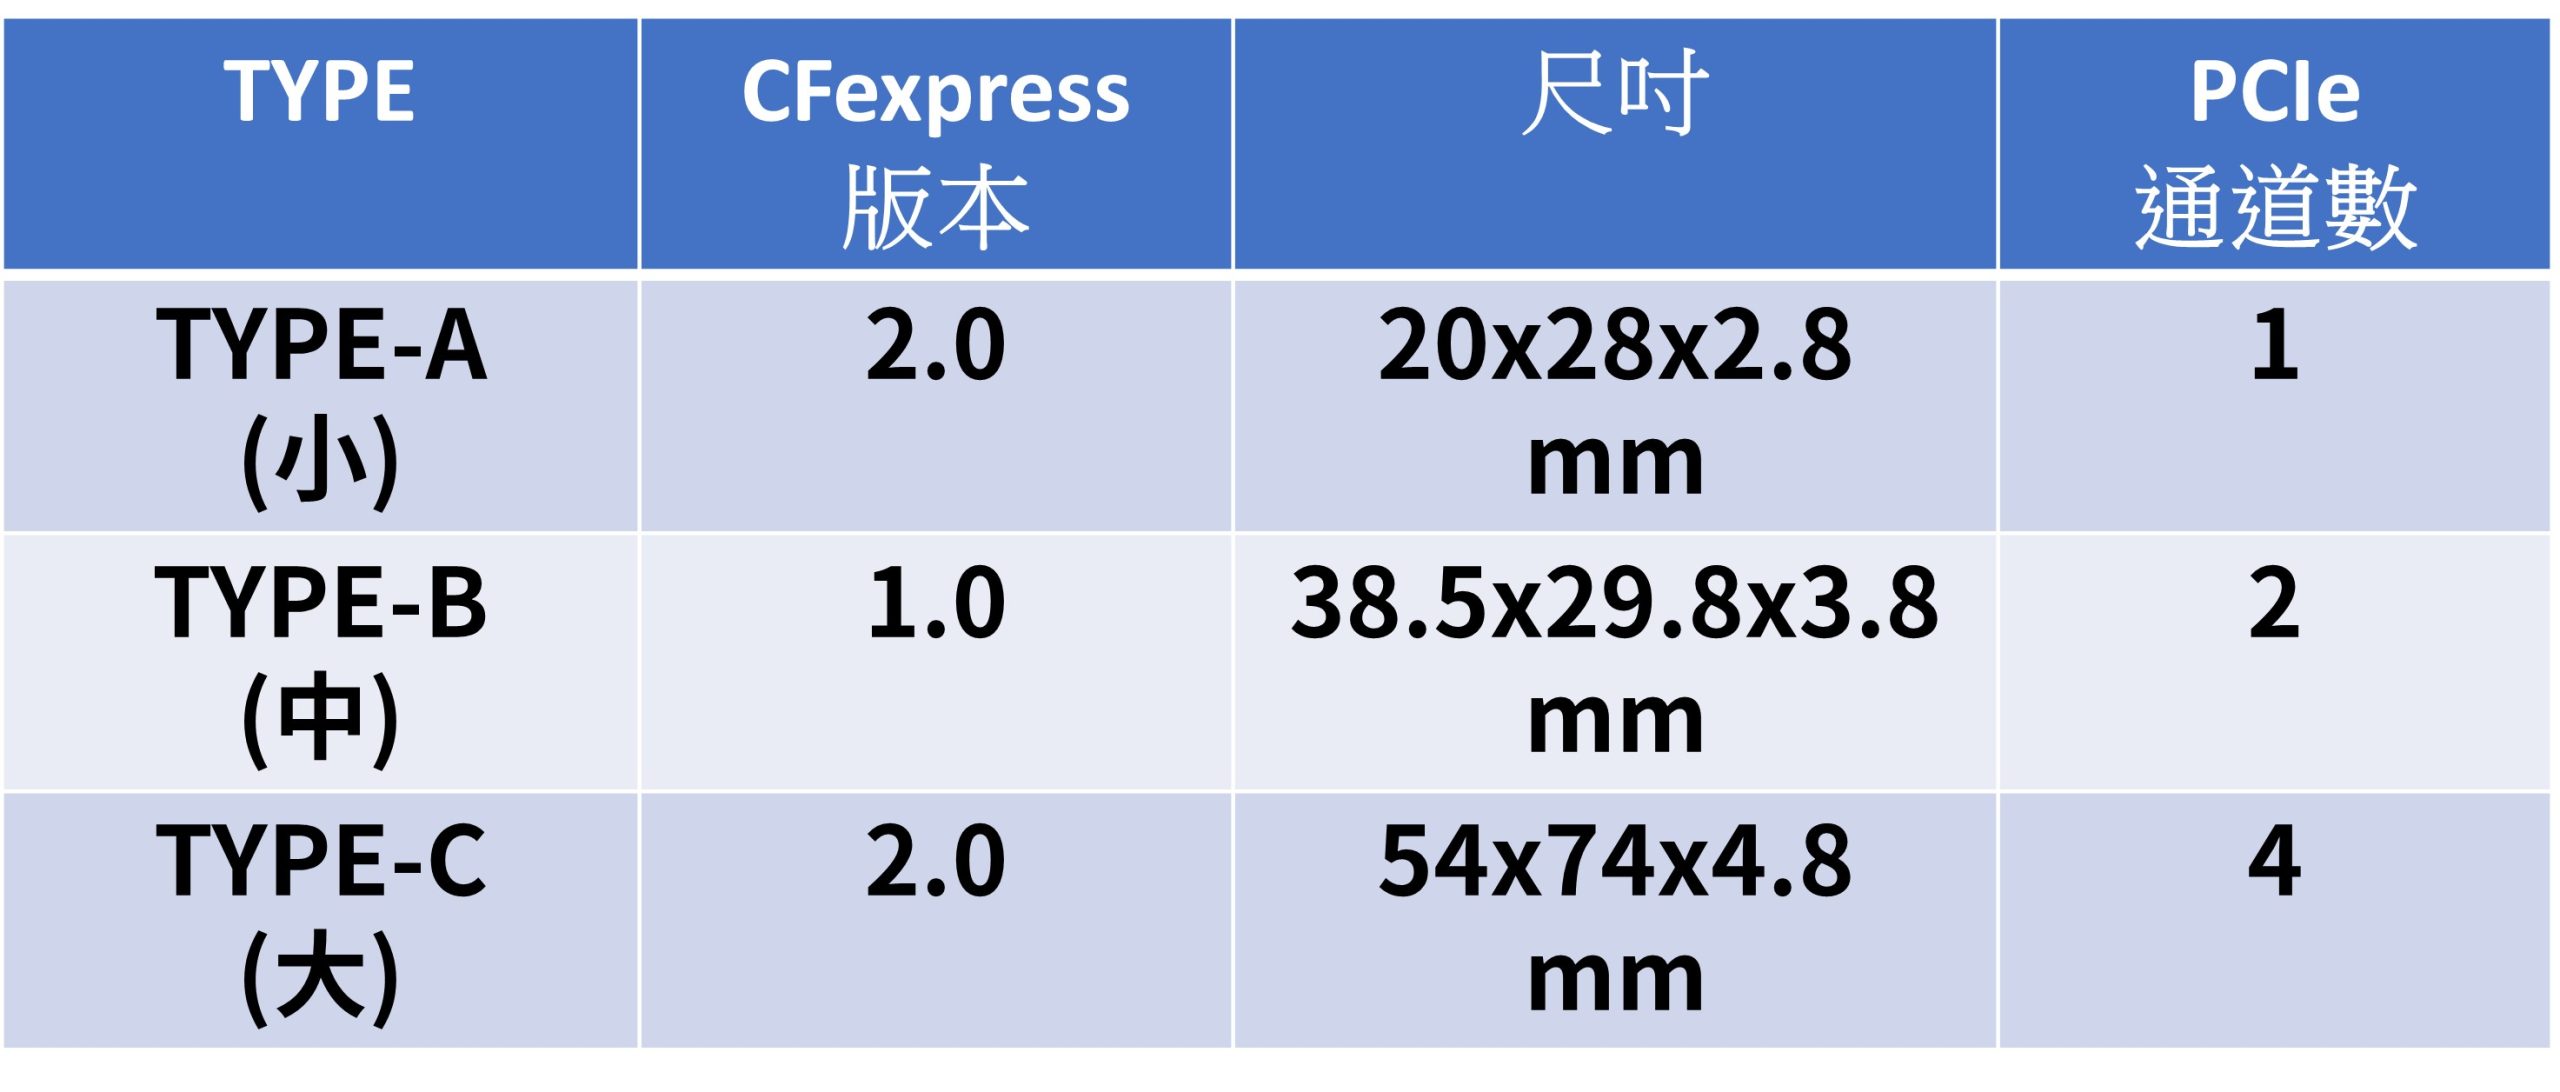 什麼是 CFexpress 記憶卡